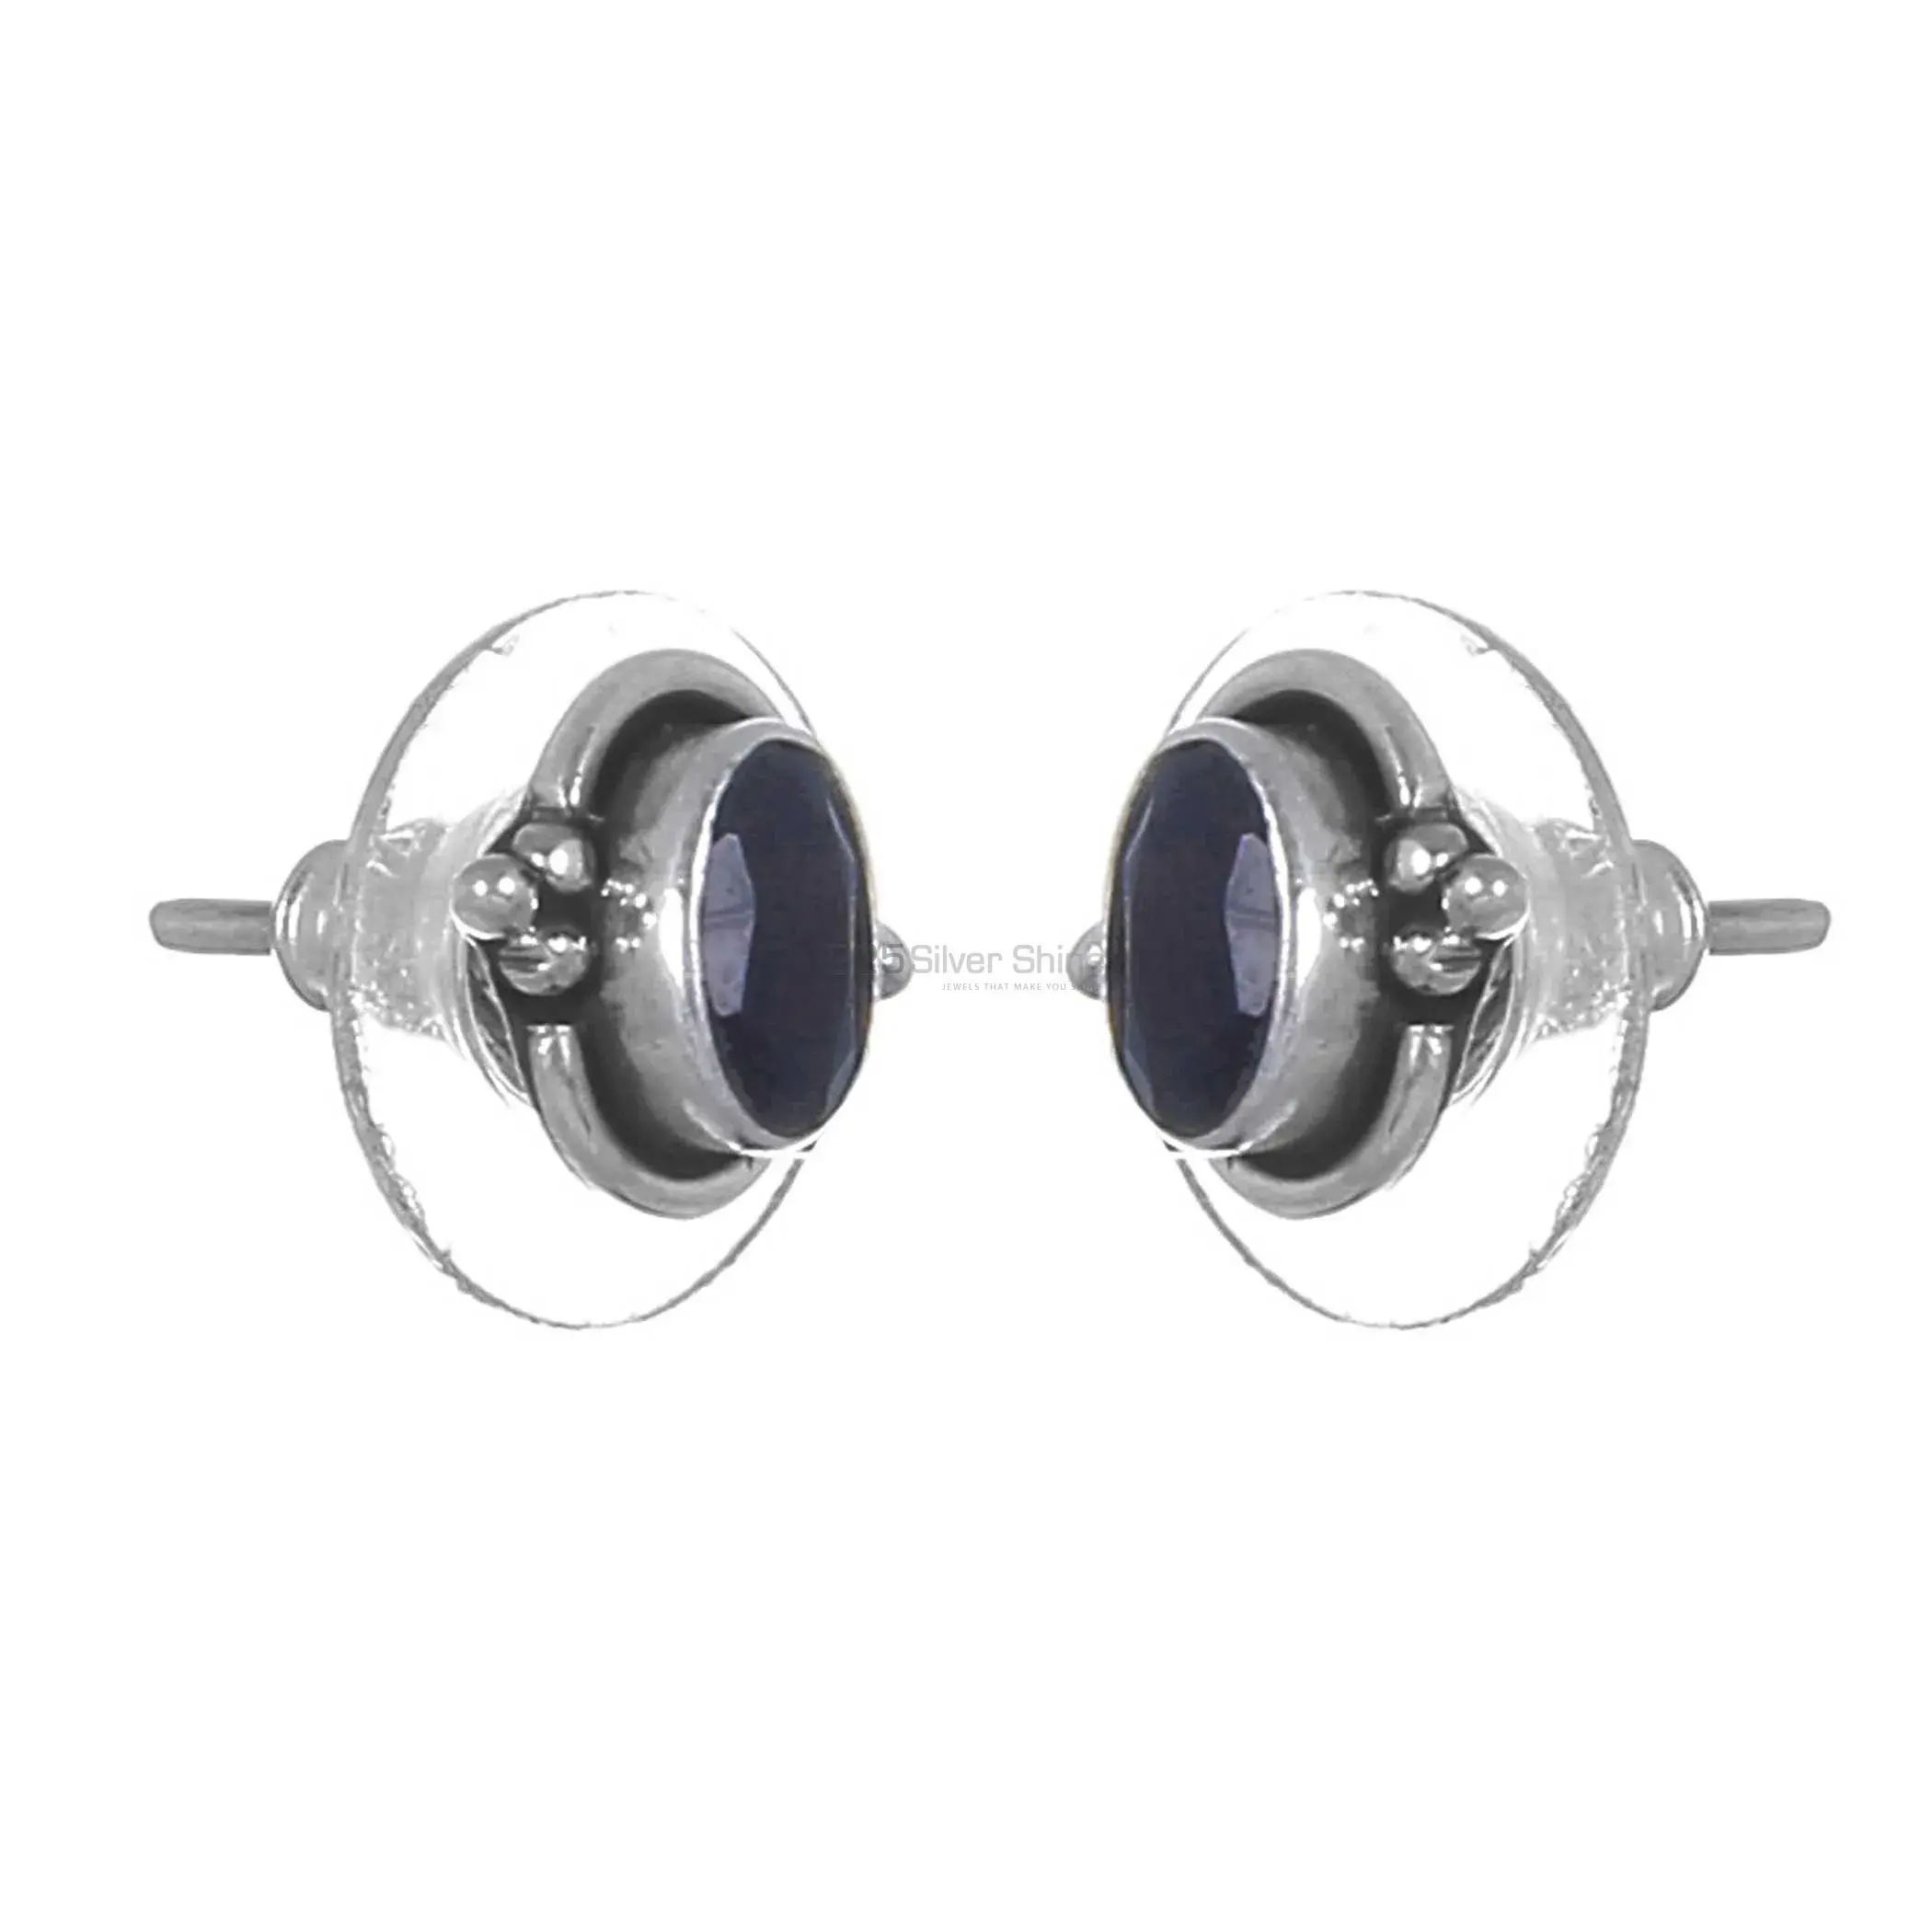 Best Quality 925 Sterling Silver Handmade Earrings In Black Onyx Gemstone Jewelry 925SE268_0